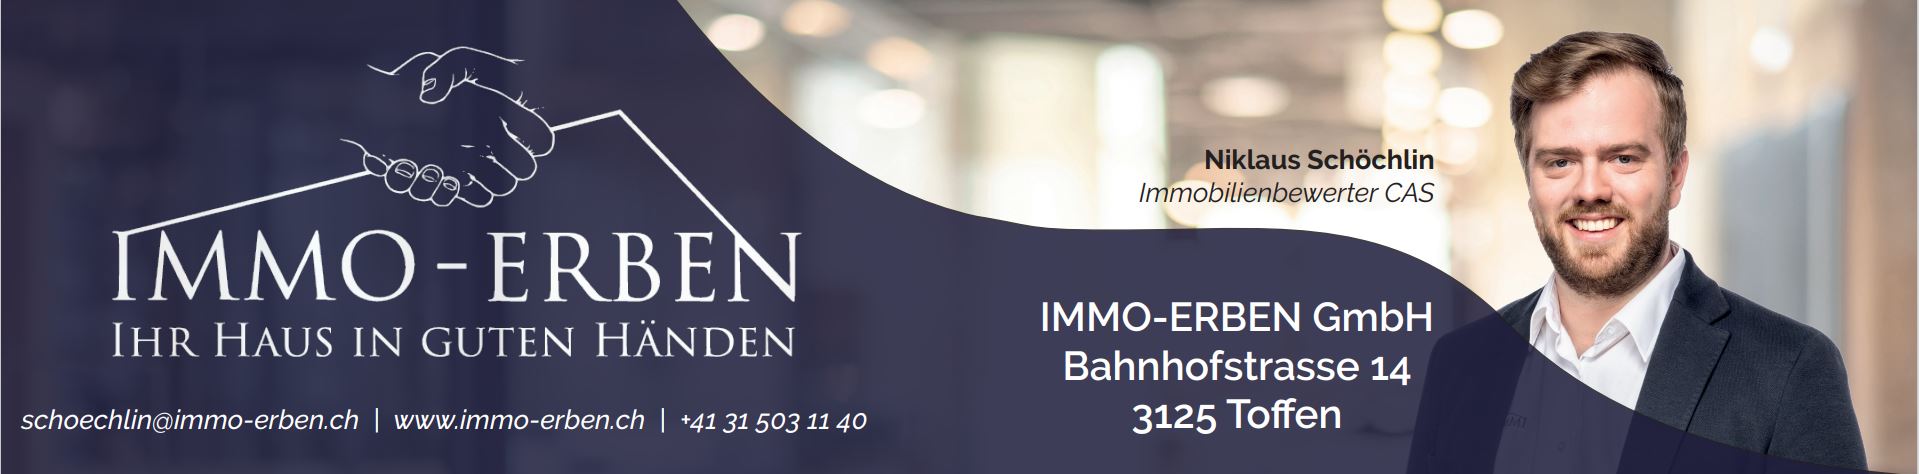 IMMO-ERBEN GmbH